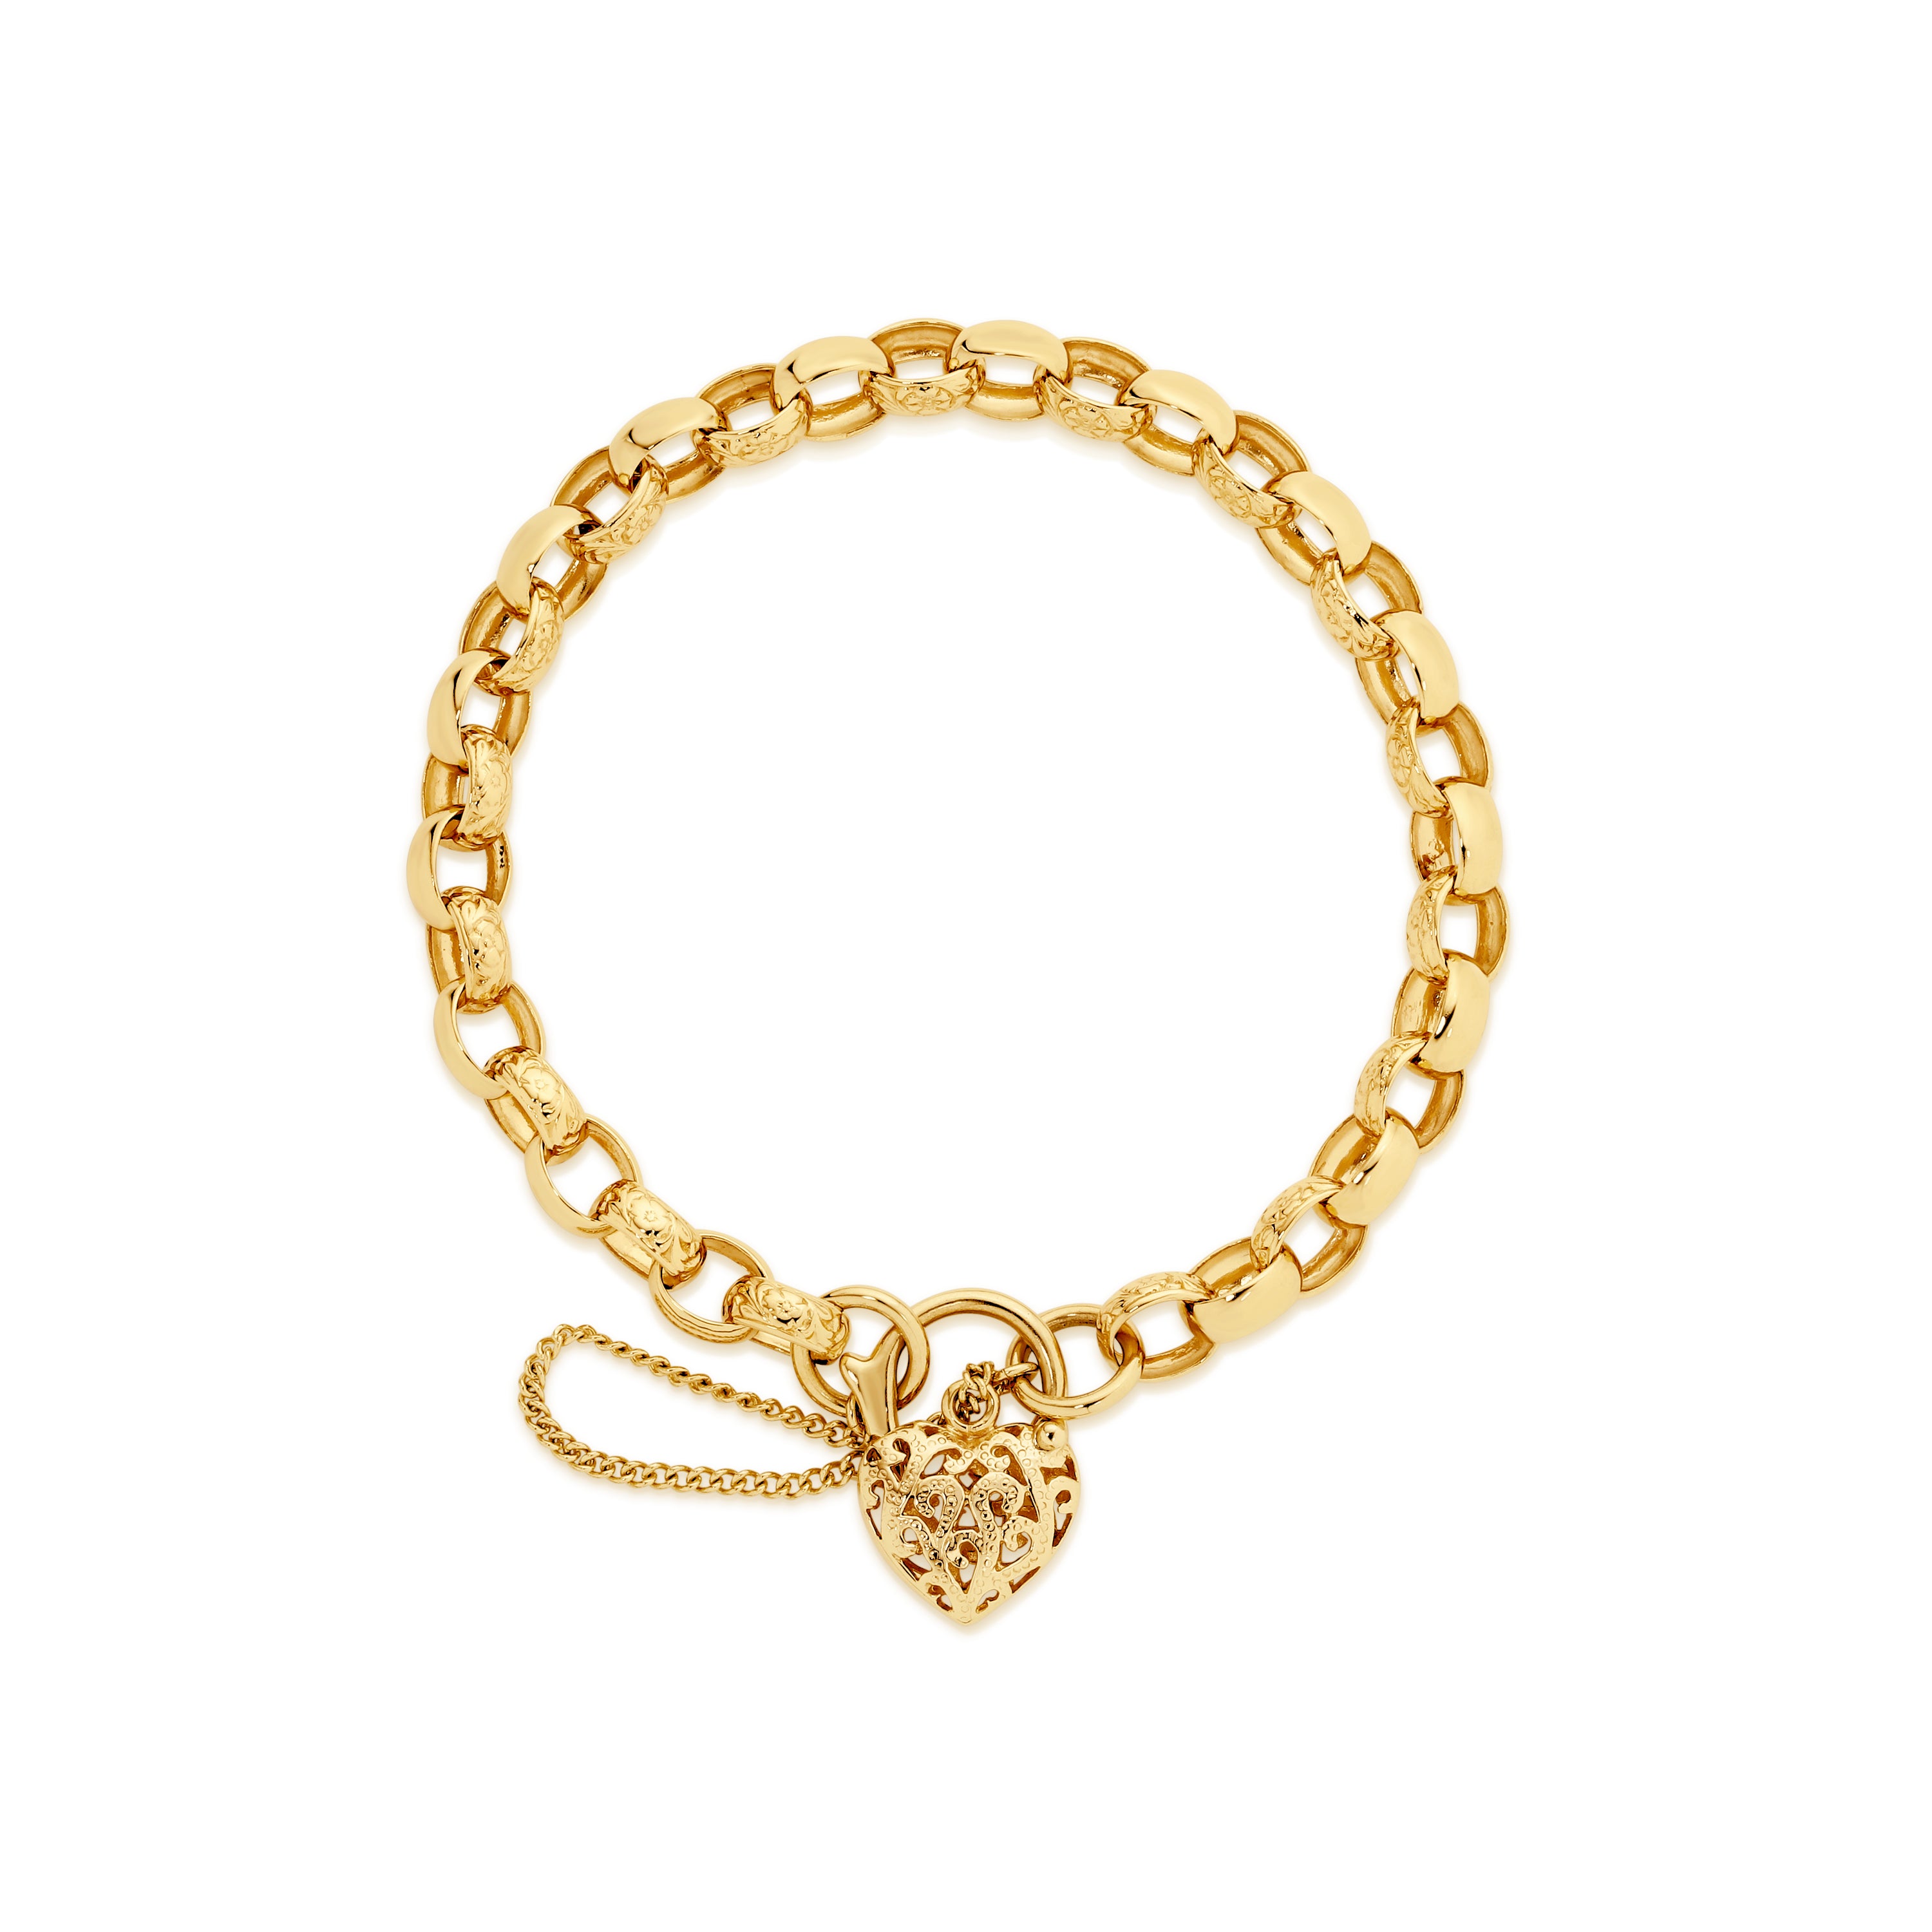 9ct gold solid engraved padlock bracelet